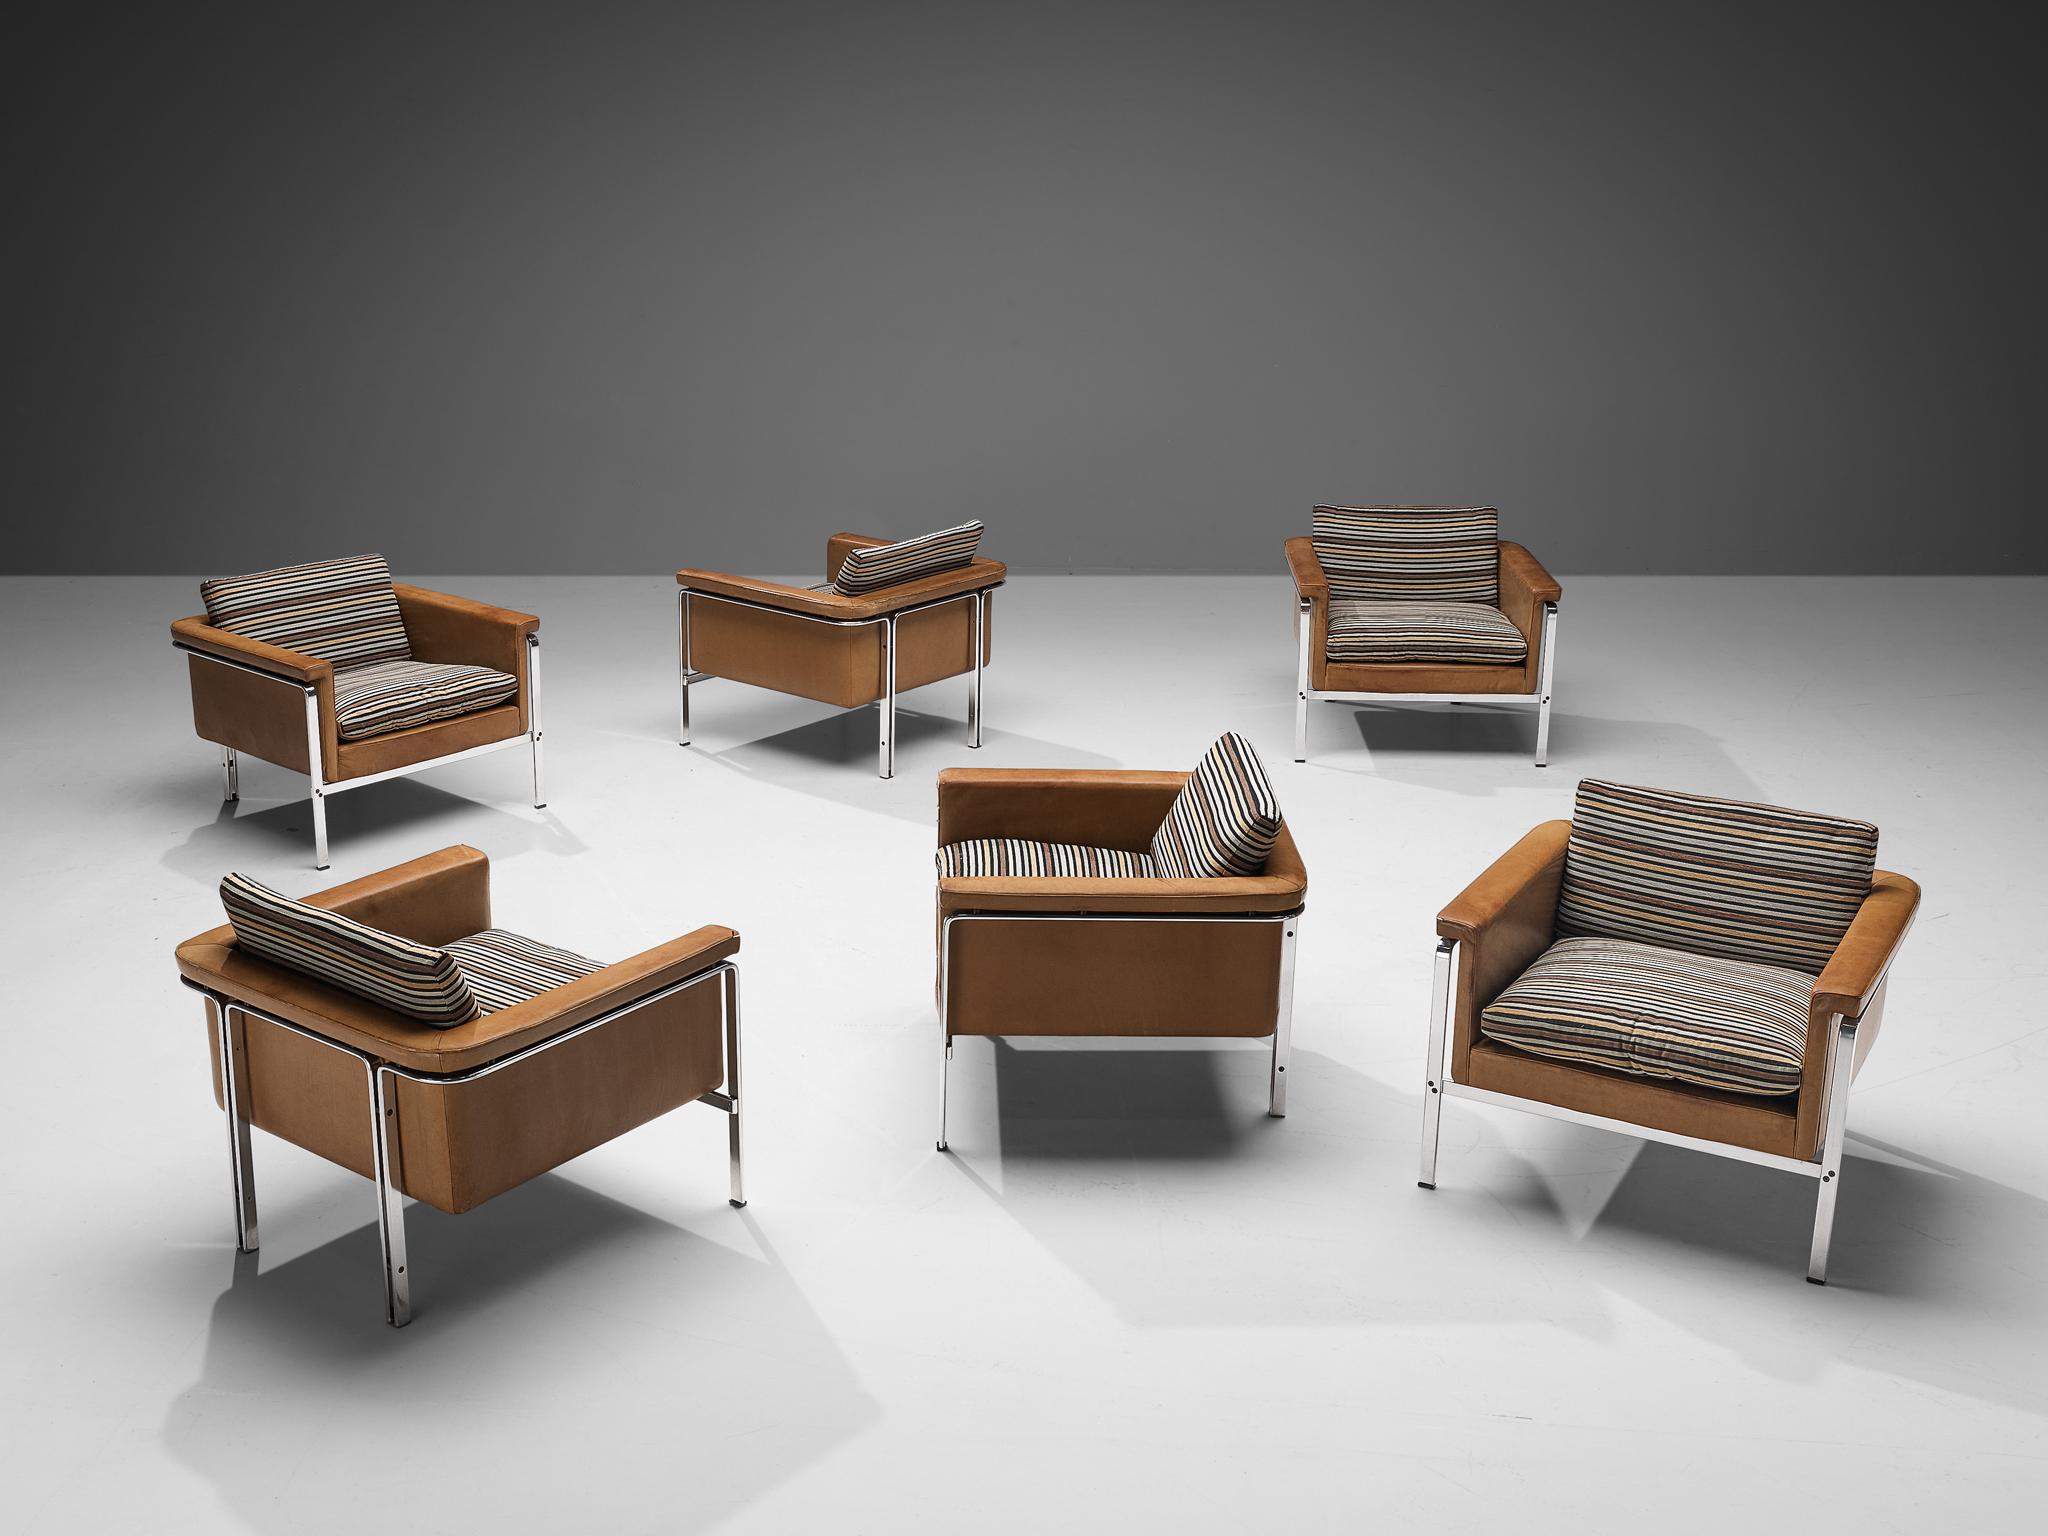 Horst Brüning pour Kill International, chaises longues modèle '6912', cuir, chrome, tissu, Allemagne, 1967. 

Cet ensemble de fauteuils bien conçus montre une construction solide aux lignes délicates et aux bords arrondis. Le plus remarquable est le